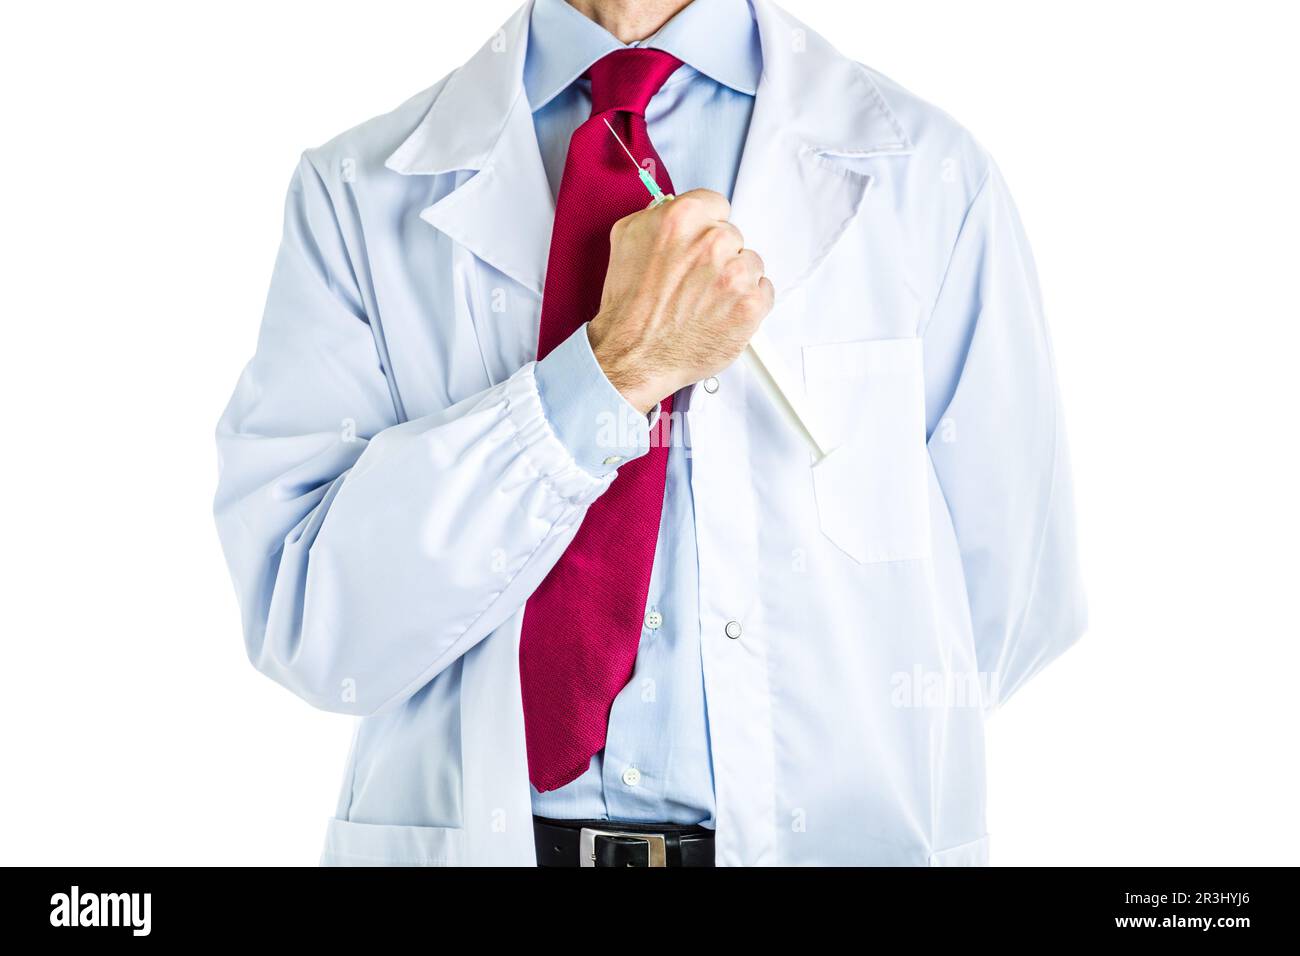 Arzt in weißem Mantel, der die Spritze hält Stockfoto